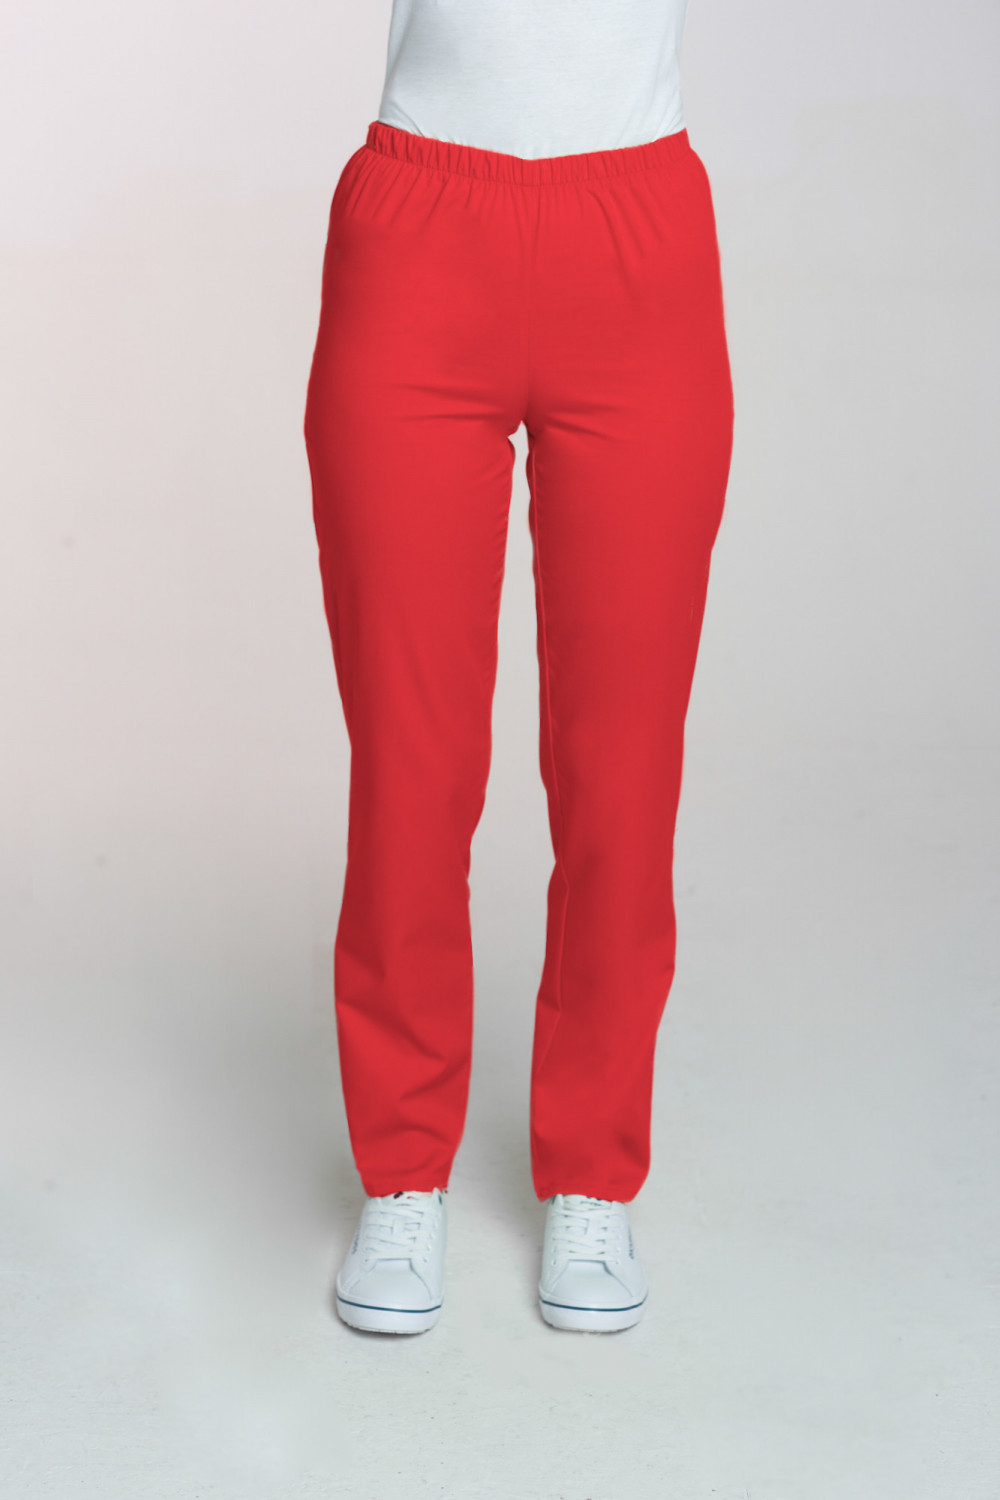 M-086 Spodnie damskie medyczne spodnie do pracy kolor czerwone